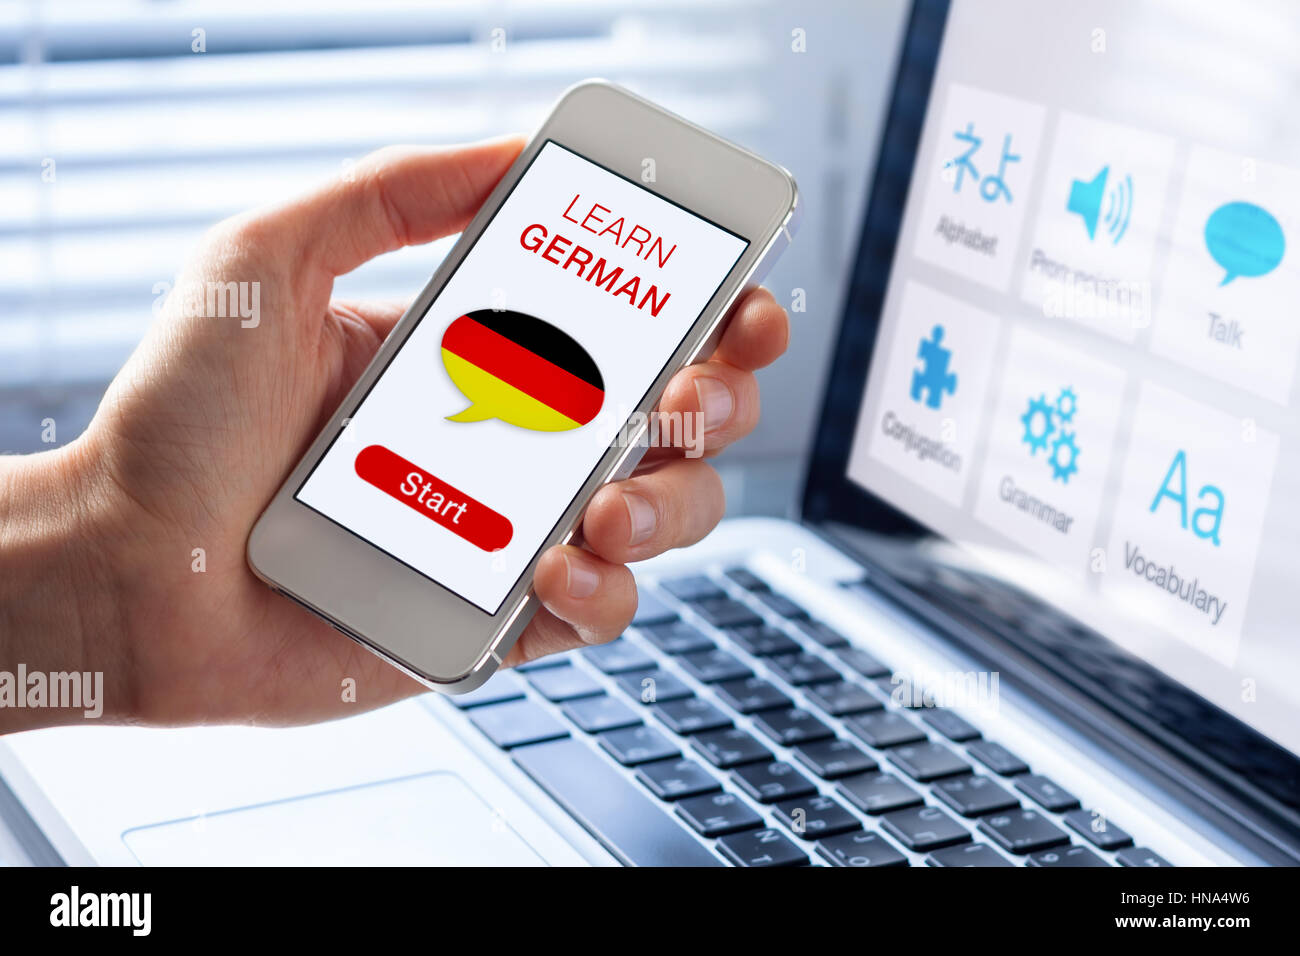 Apprendre l'allemand en ligne avec un concept de langue personne montrant l'e-learning application sur téléphone mobile avec le pavillon de l'Allemagne Banque D'Images